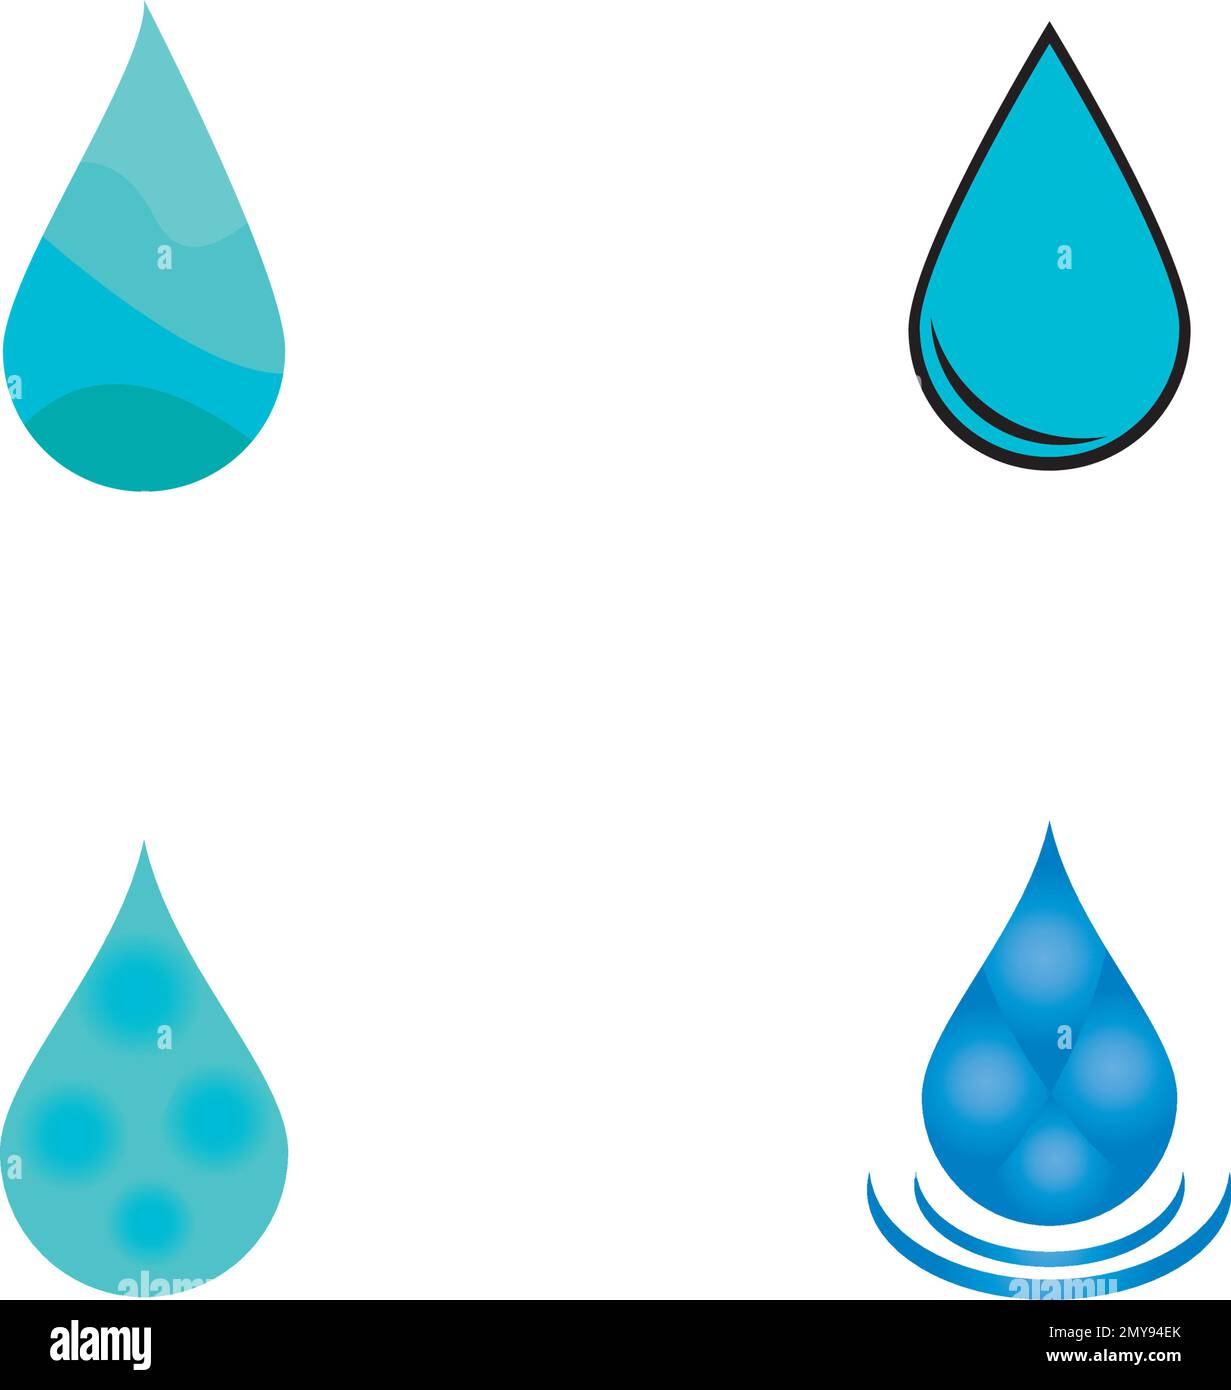 disegno dell'illustrazione vettoriale dell'icona della goccia d'acqua Illustrazione Vettoriale